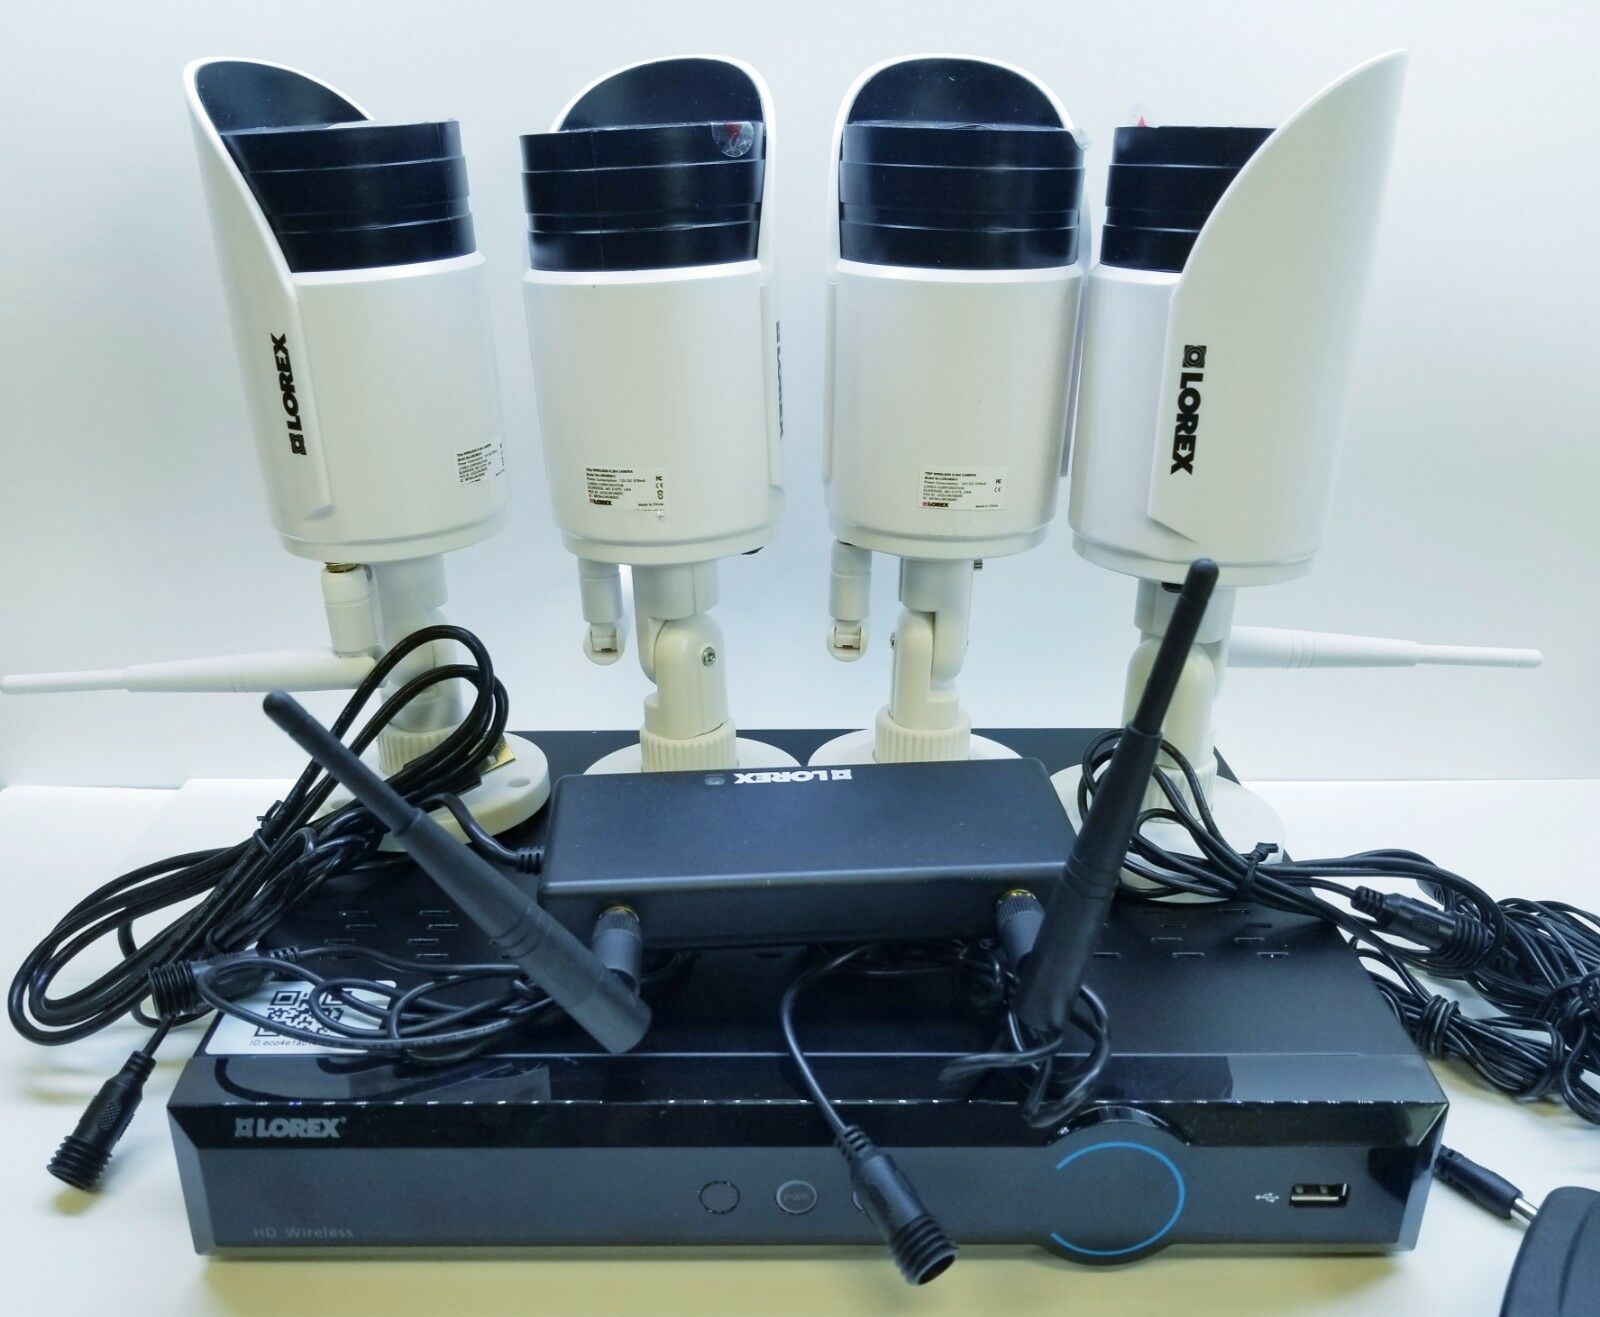 Lorex By Flir - Lx4471w 720p Wireless Security Camera System